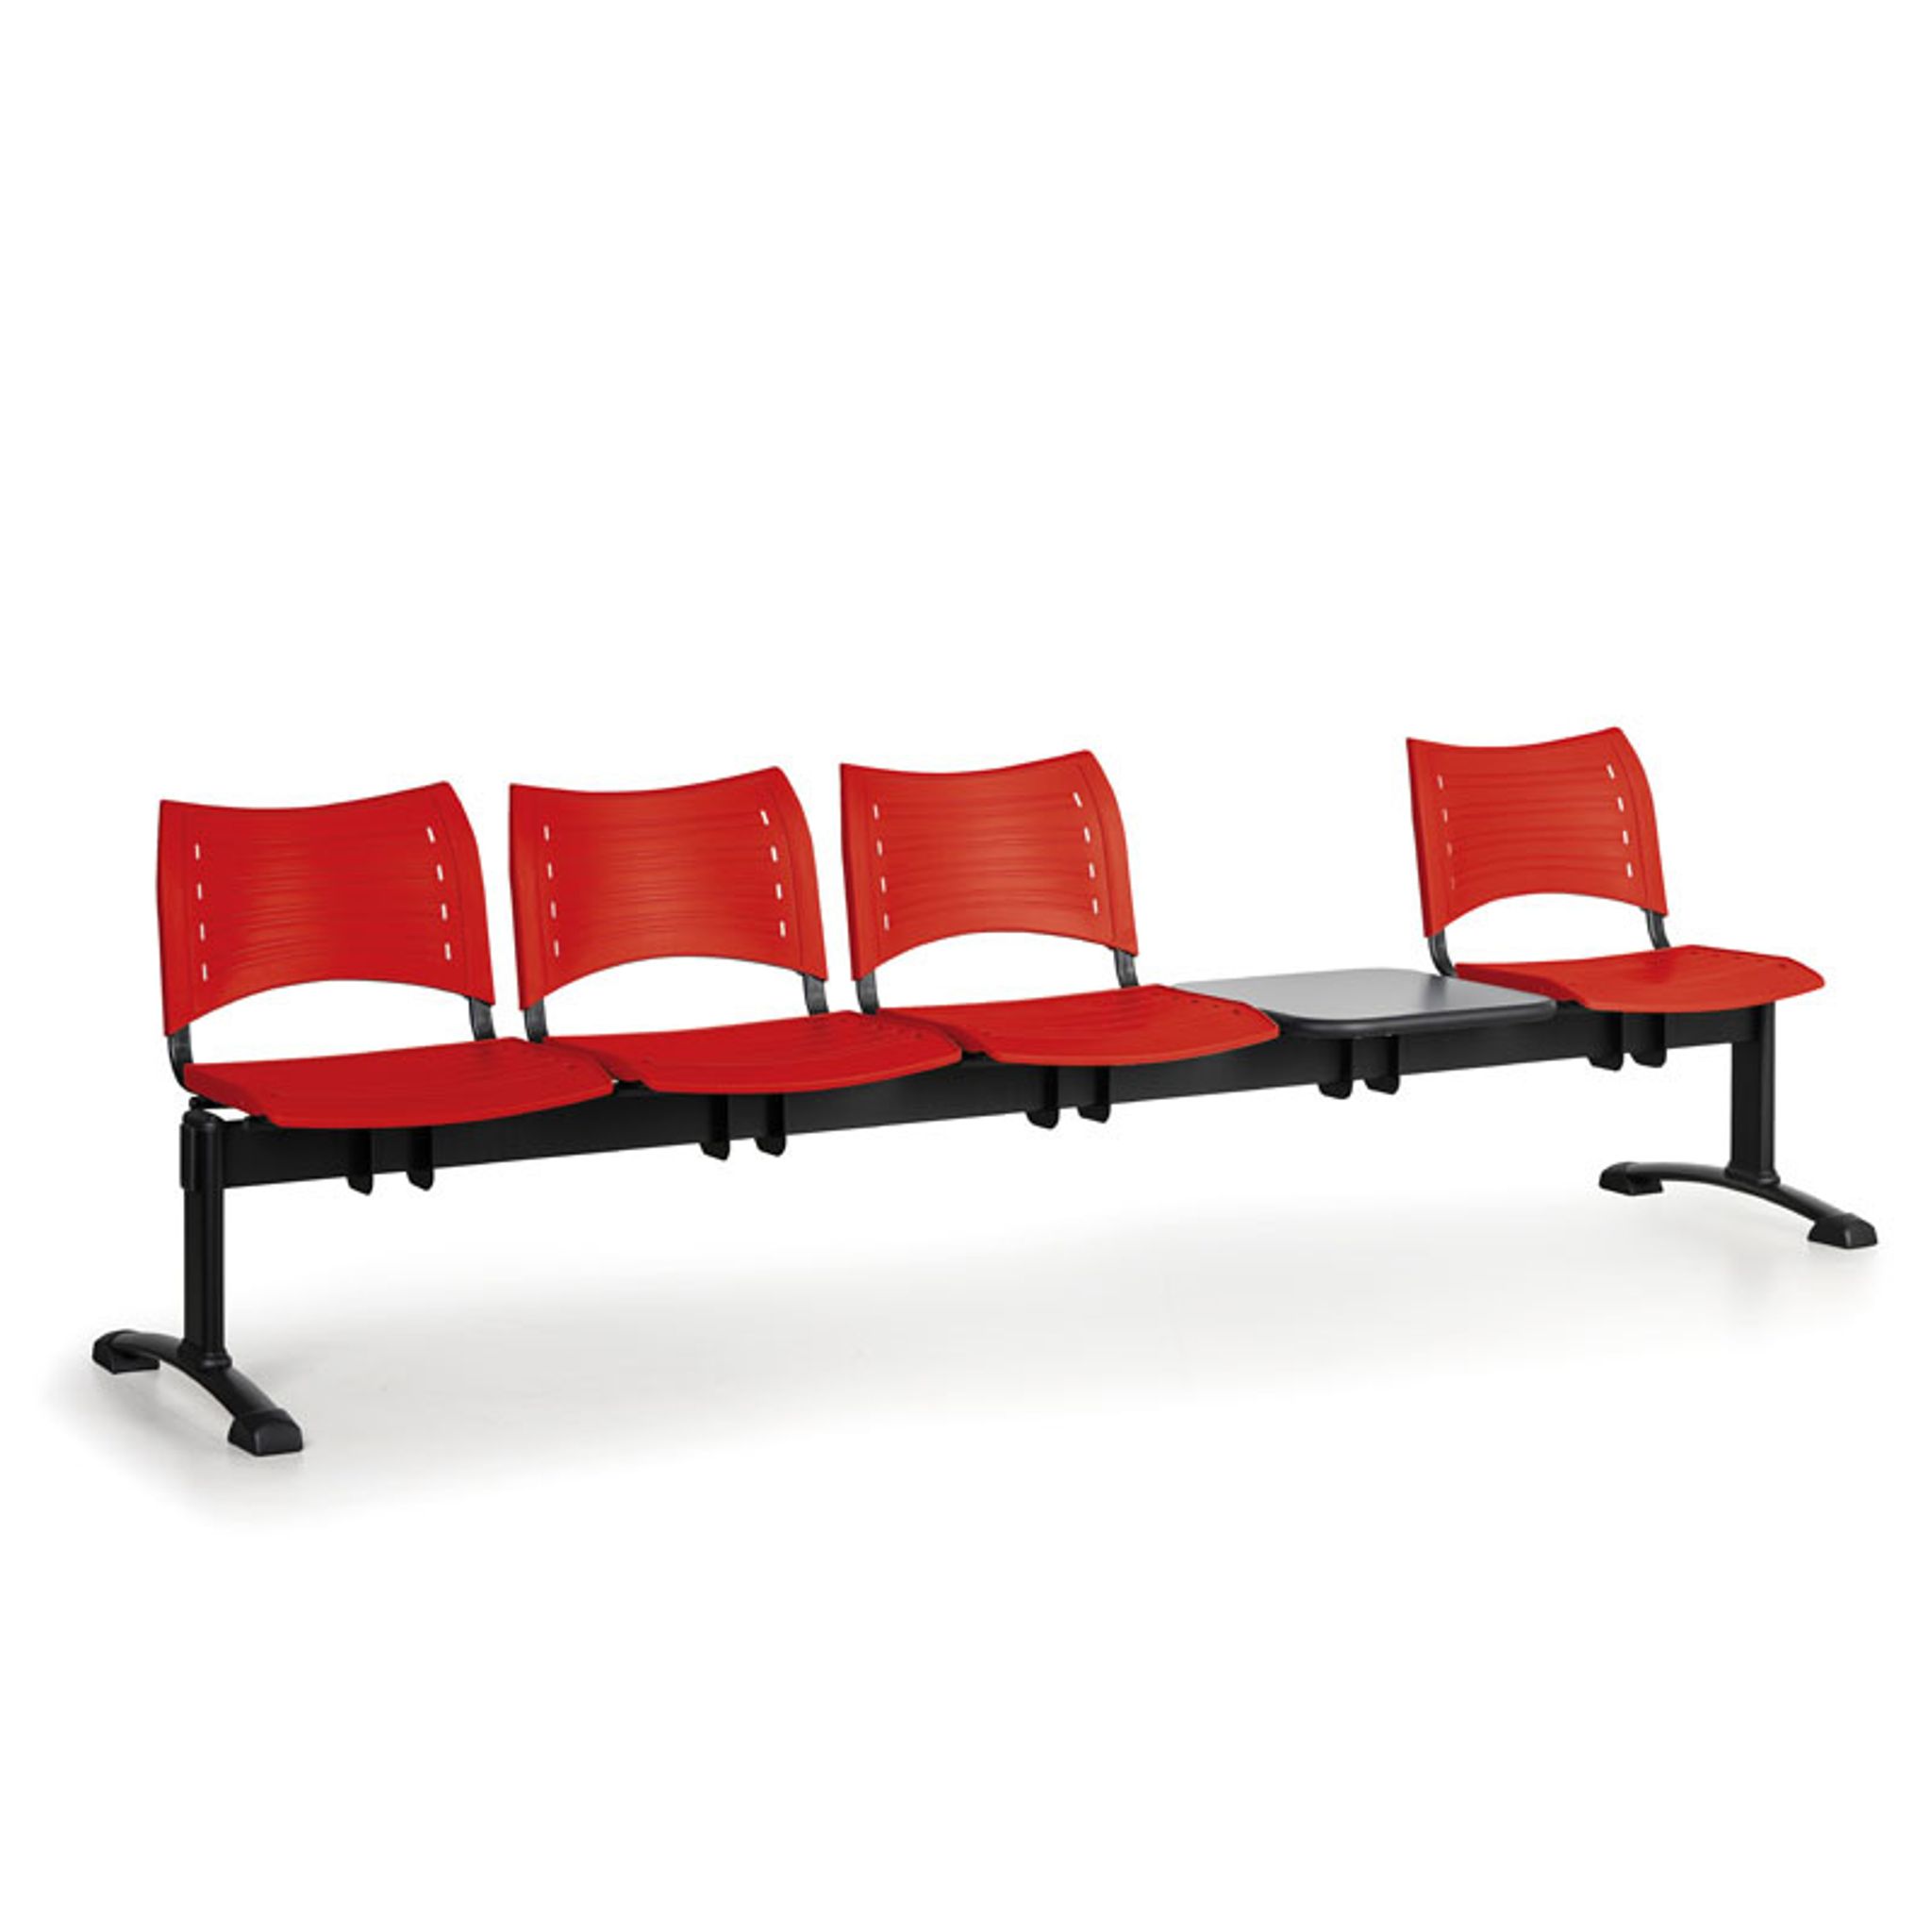 Kunststoff-Wartezimmerbank, Traversenbank VISIO, 4-sitzer + Tisch, rot, schwarze Füße